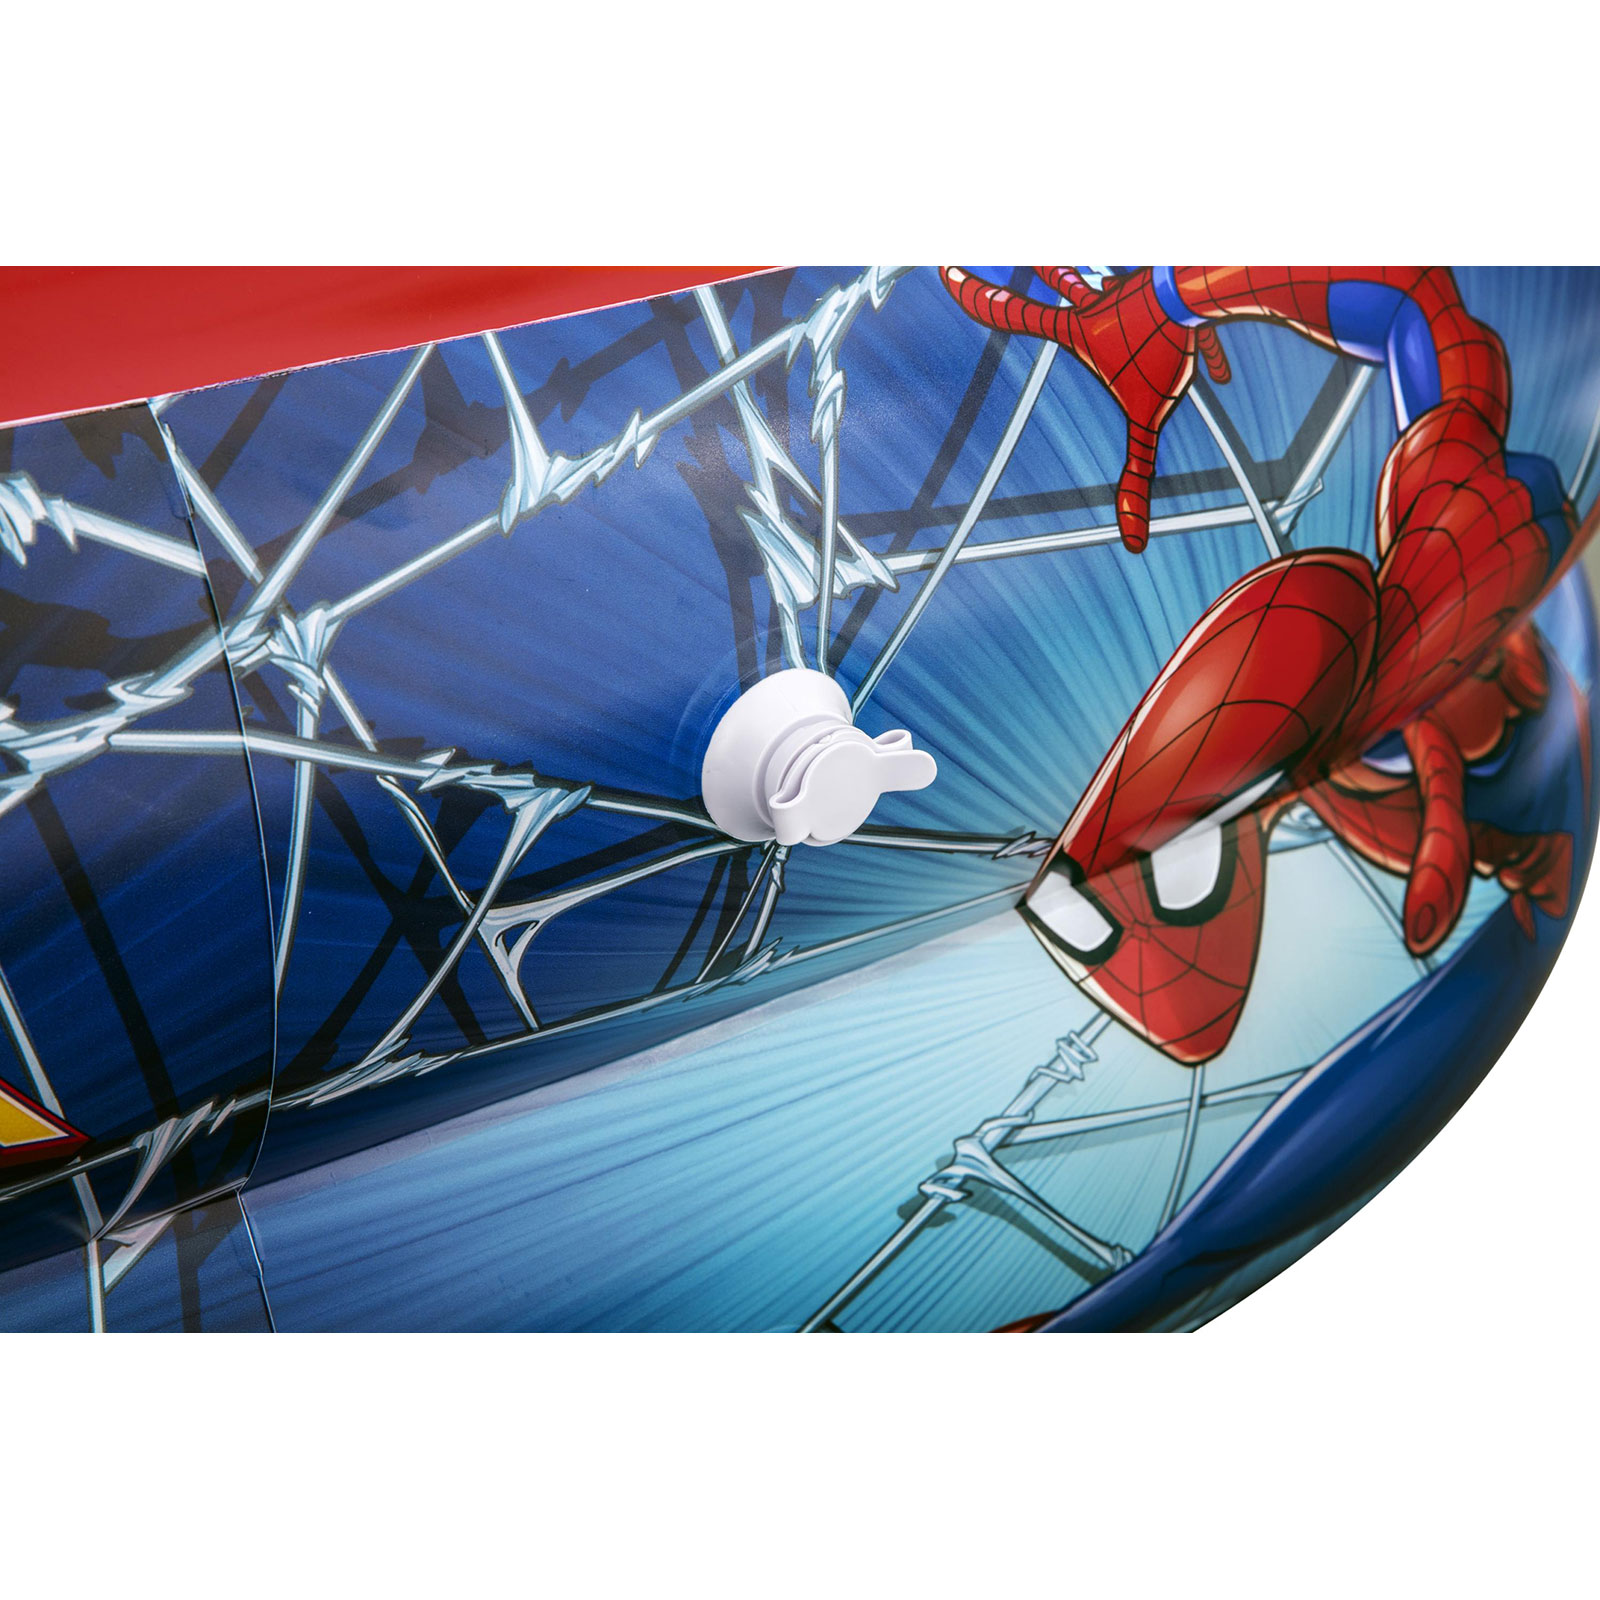 Piscina Hinchable Autoportante Infantil Bestway 200x146x48 Cm Diseño Spider Man Rápida Instalación - Mayores De 3 Años  MKP